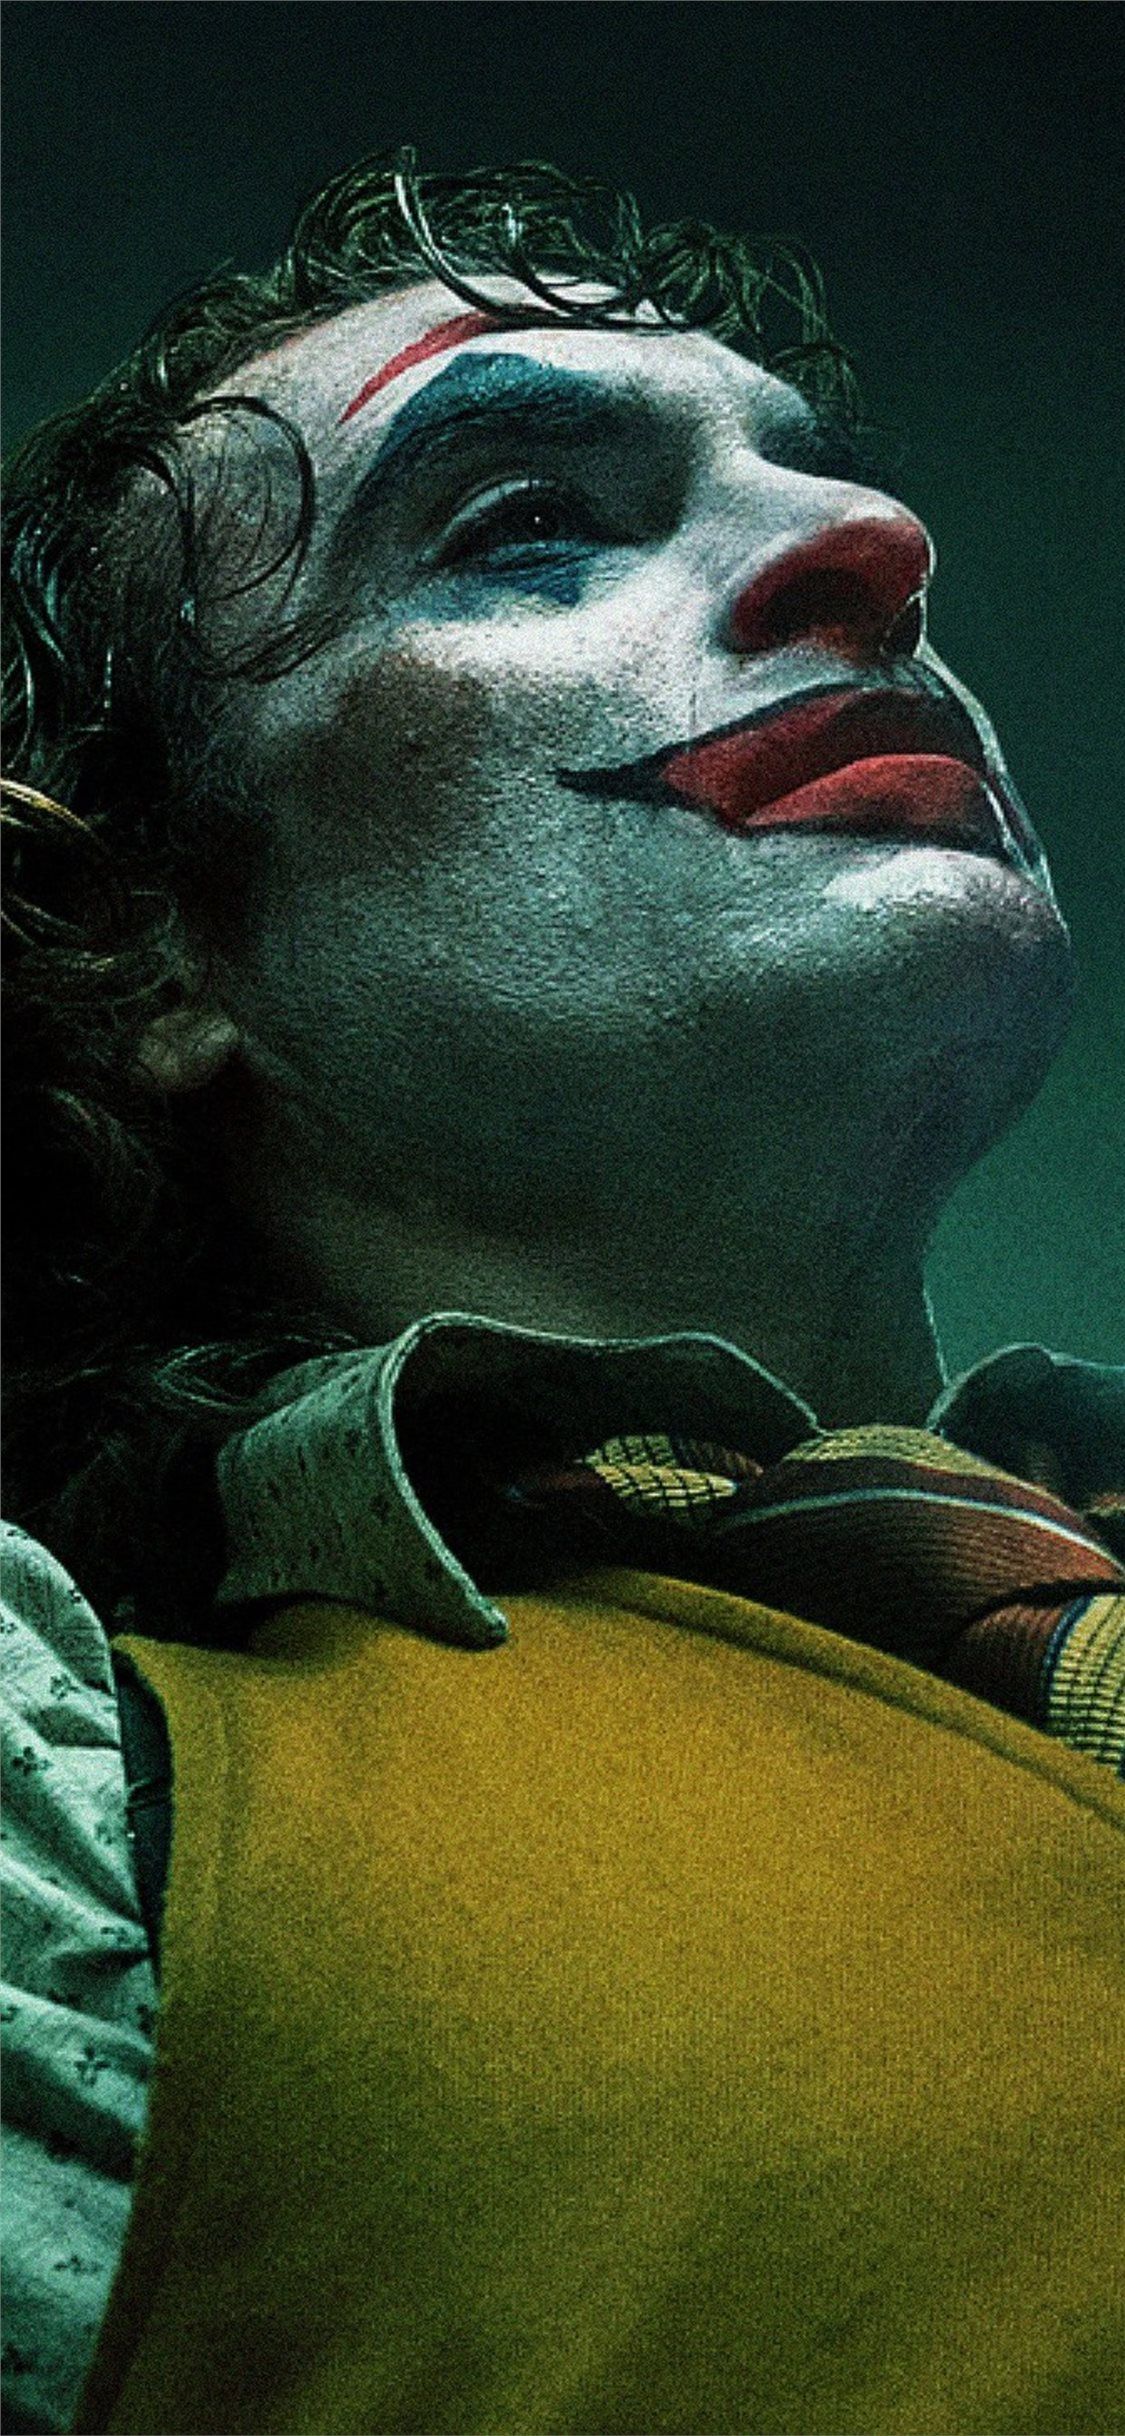 2019 Joker Joaquin Phoenix Iphone X Wallpapers Free - Joker Joaquin Phoenix Wallpaper  Iphone - 1125x2436 Wallpaper 